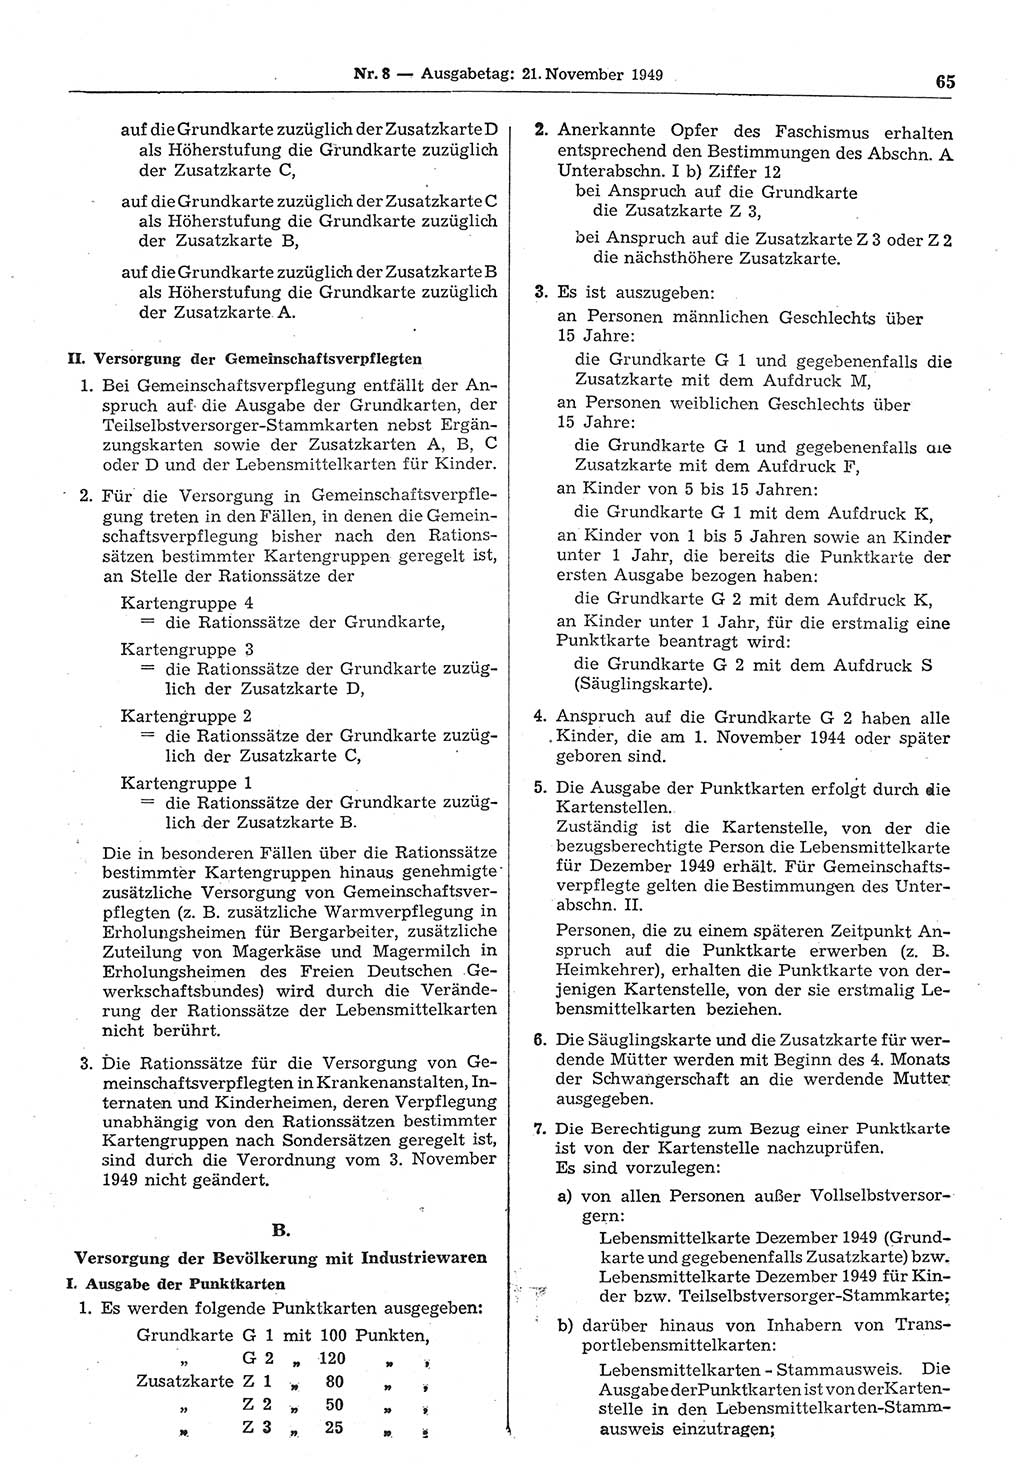 Gesetzblatt (GBl.) der Deutschen Demokratischen Republik (DDR) 1949, Seite 65 (GBl. DDR 1949, S. 65)